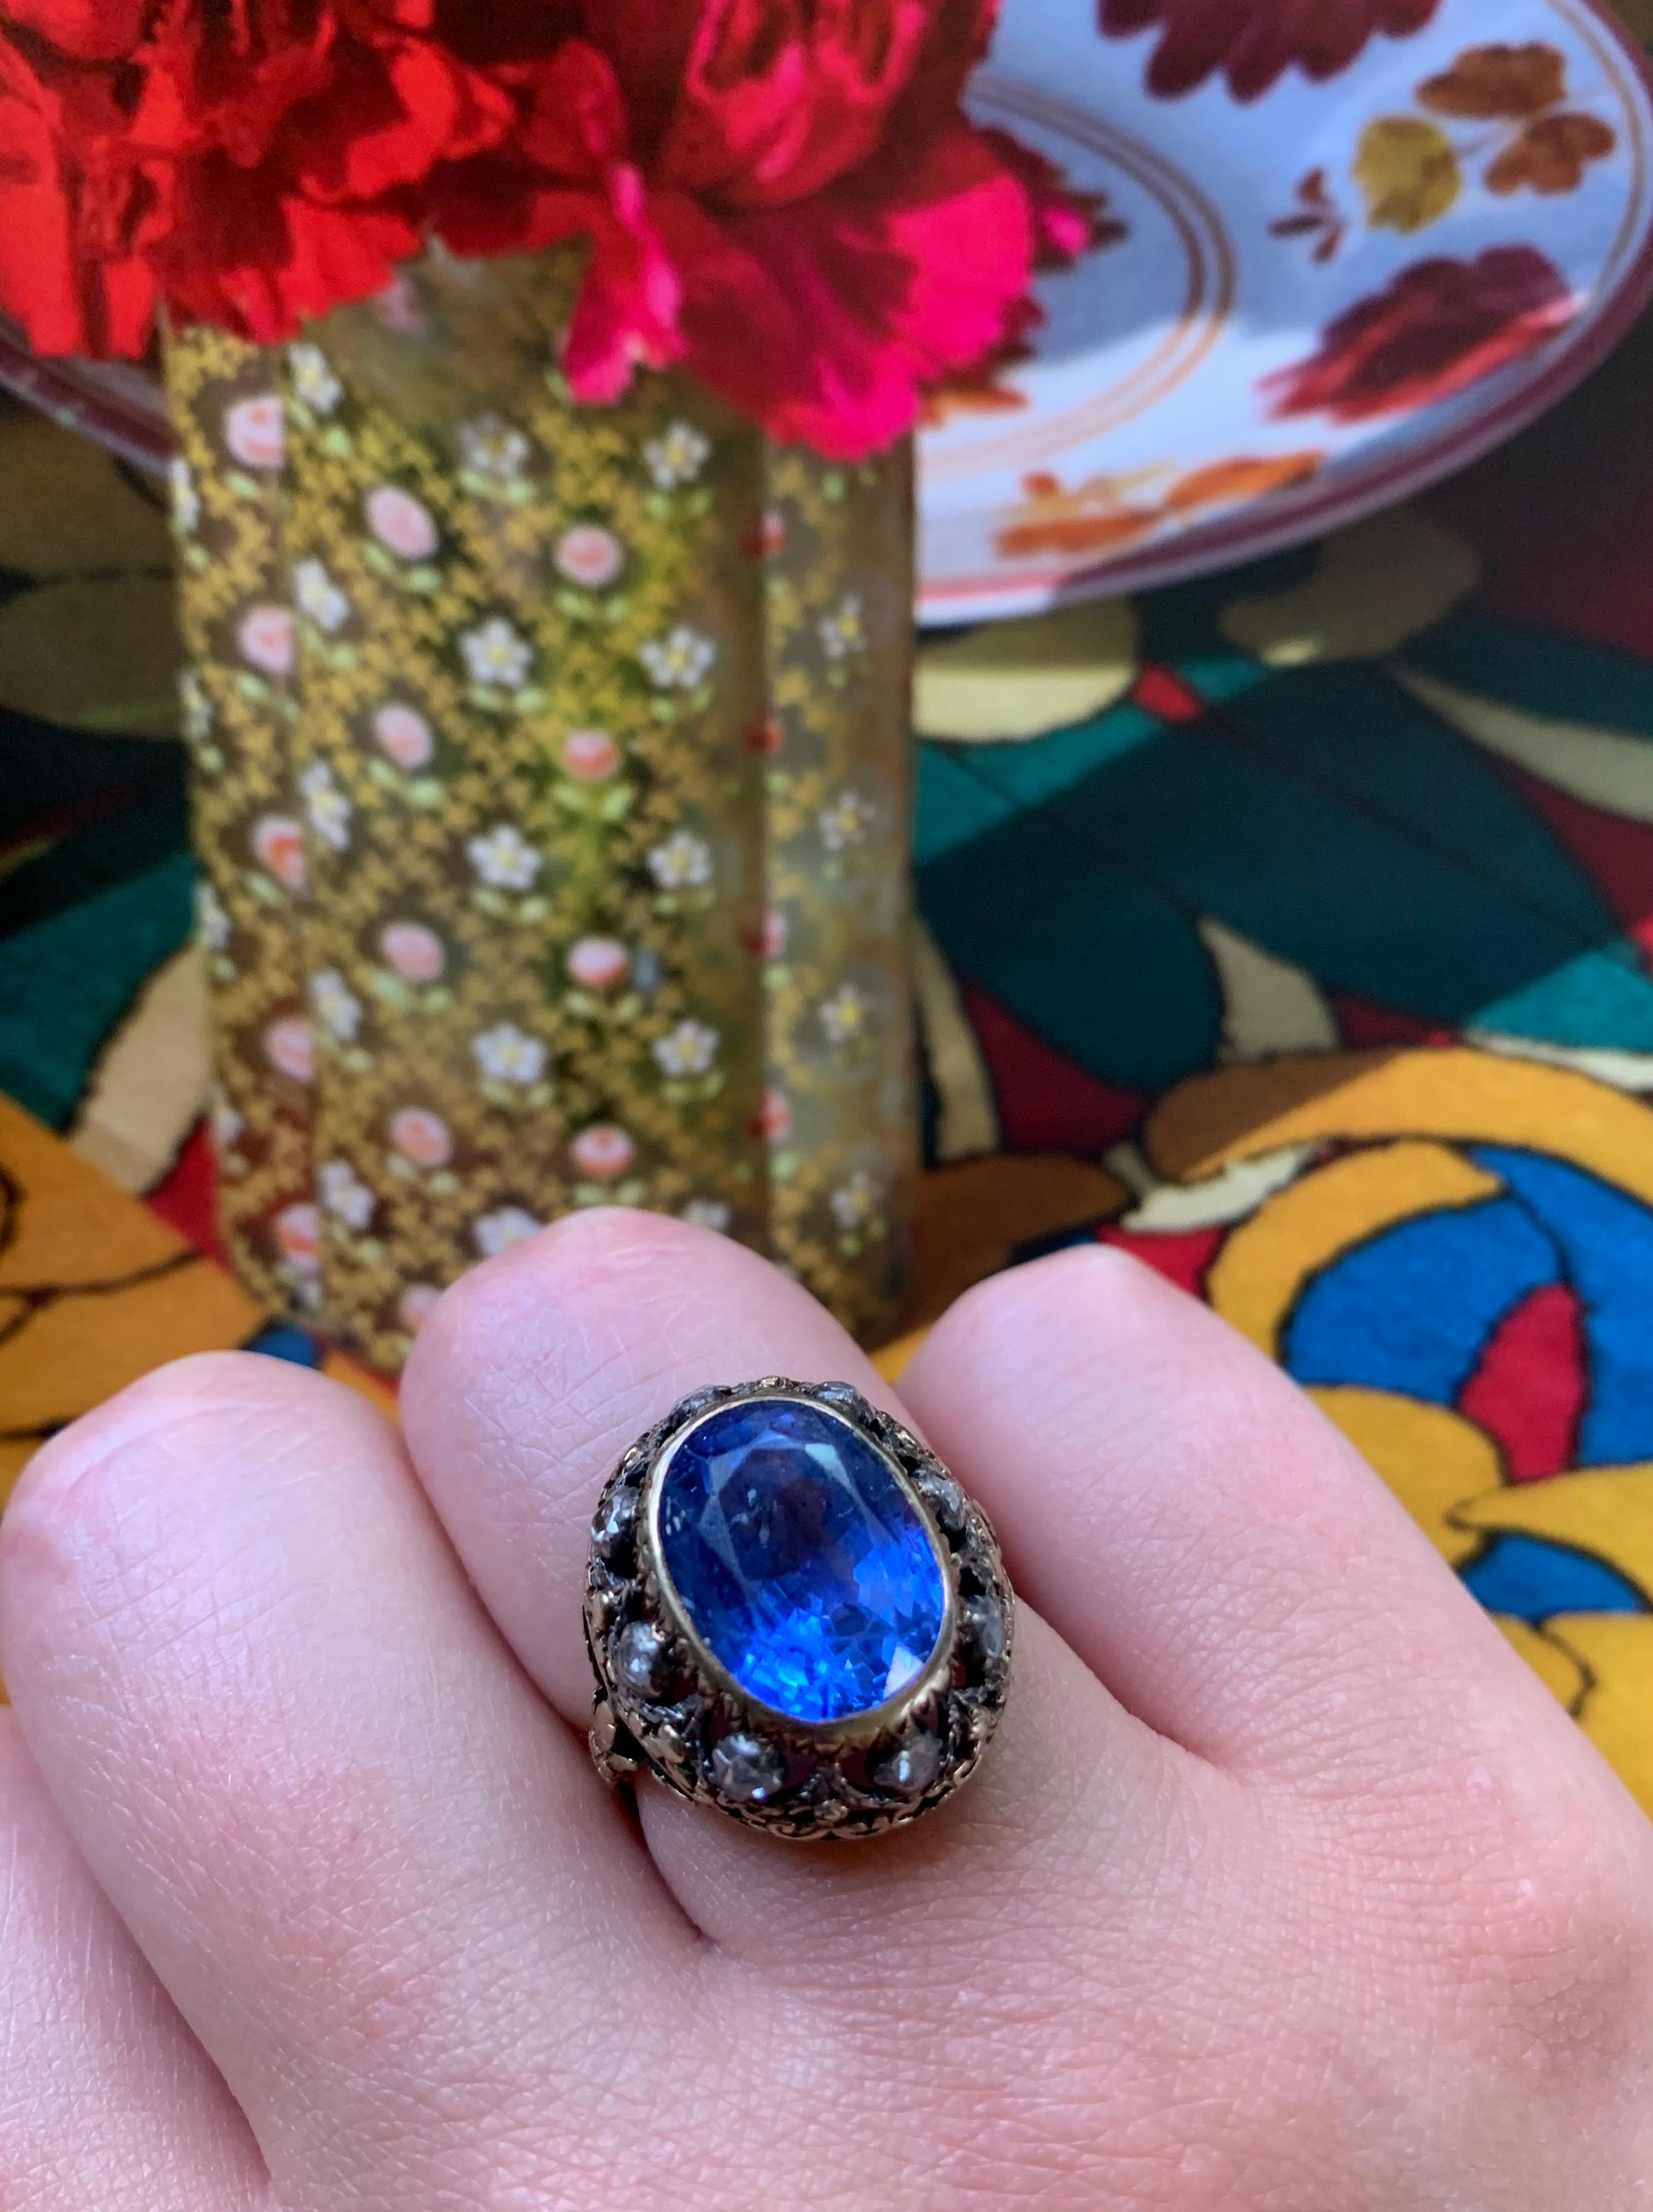 Außergewöhnlicher Ring aus der georgischen Periode mit natürlichem Farbwechsel von Saphiren und Diamanten im Rosenschliff.
Der Saphir srilankischen Ursprungs, lebendige blaue Farbe, die in Violett übergeht, etwa 8 Karat, misst 12,63 x 9,08 x 7,52